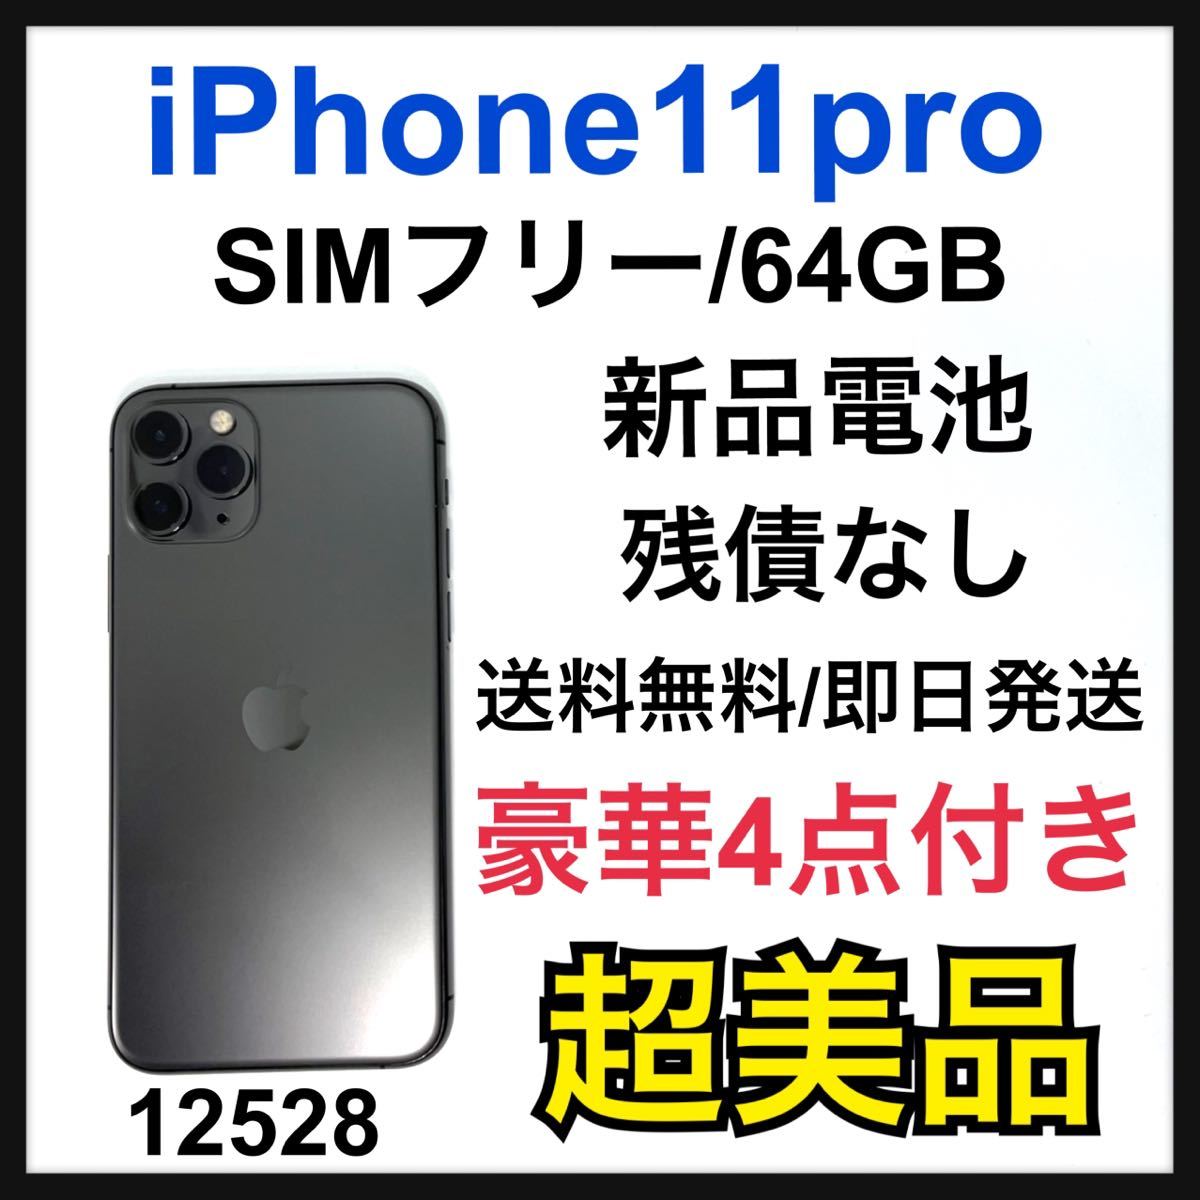 IPhone 11 Pro スペースグレイ 64 GB SIMフリー 携帯電話